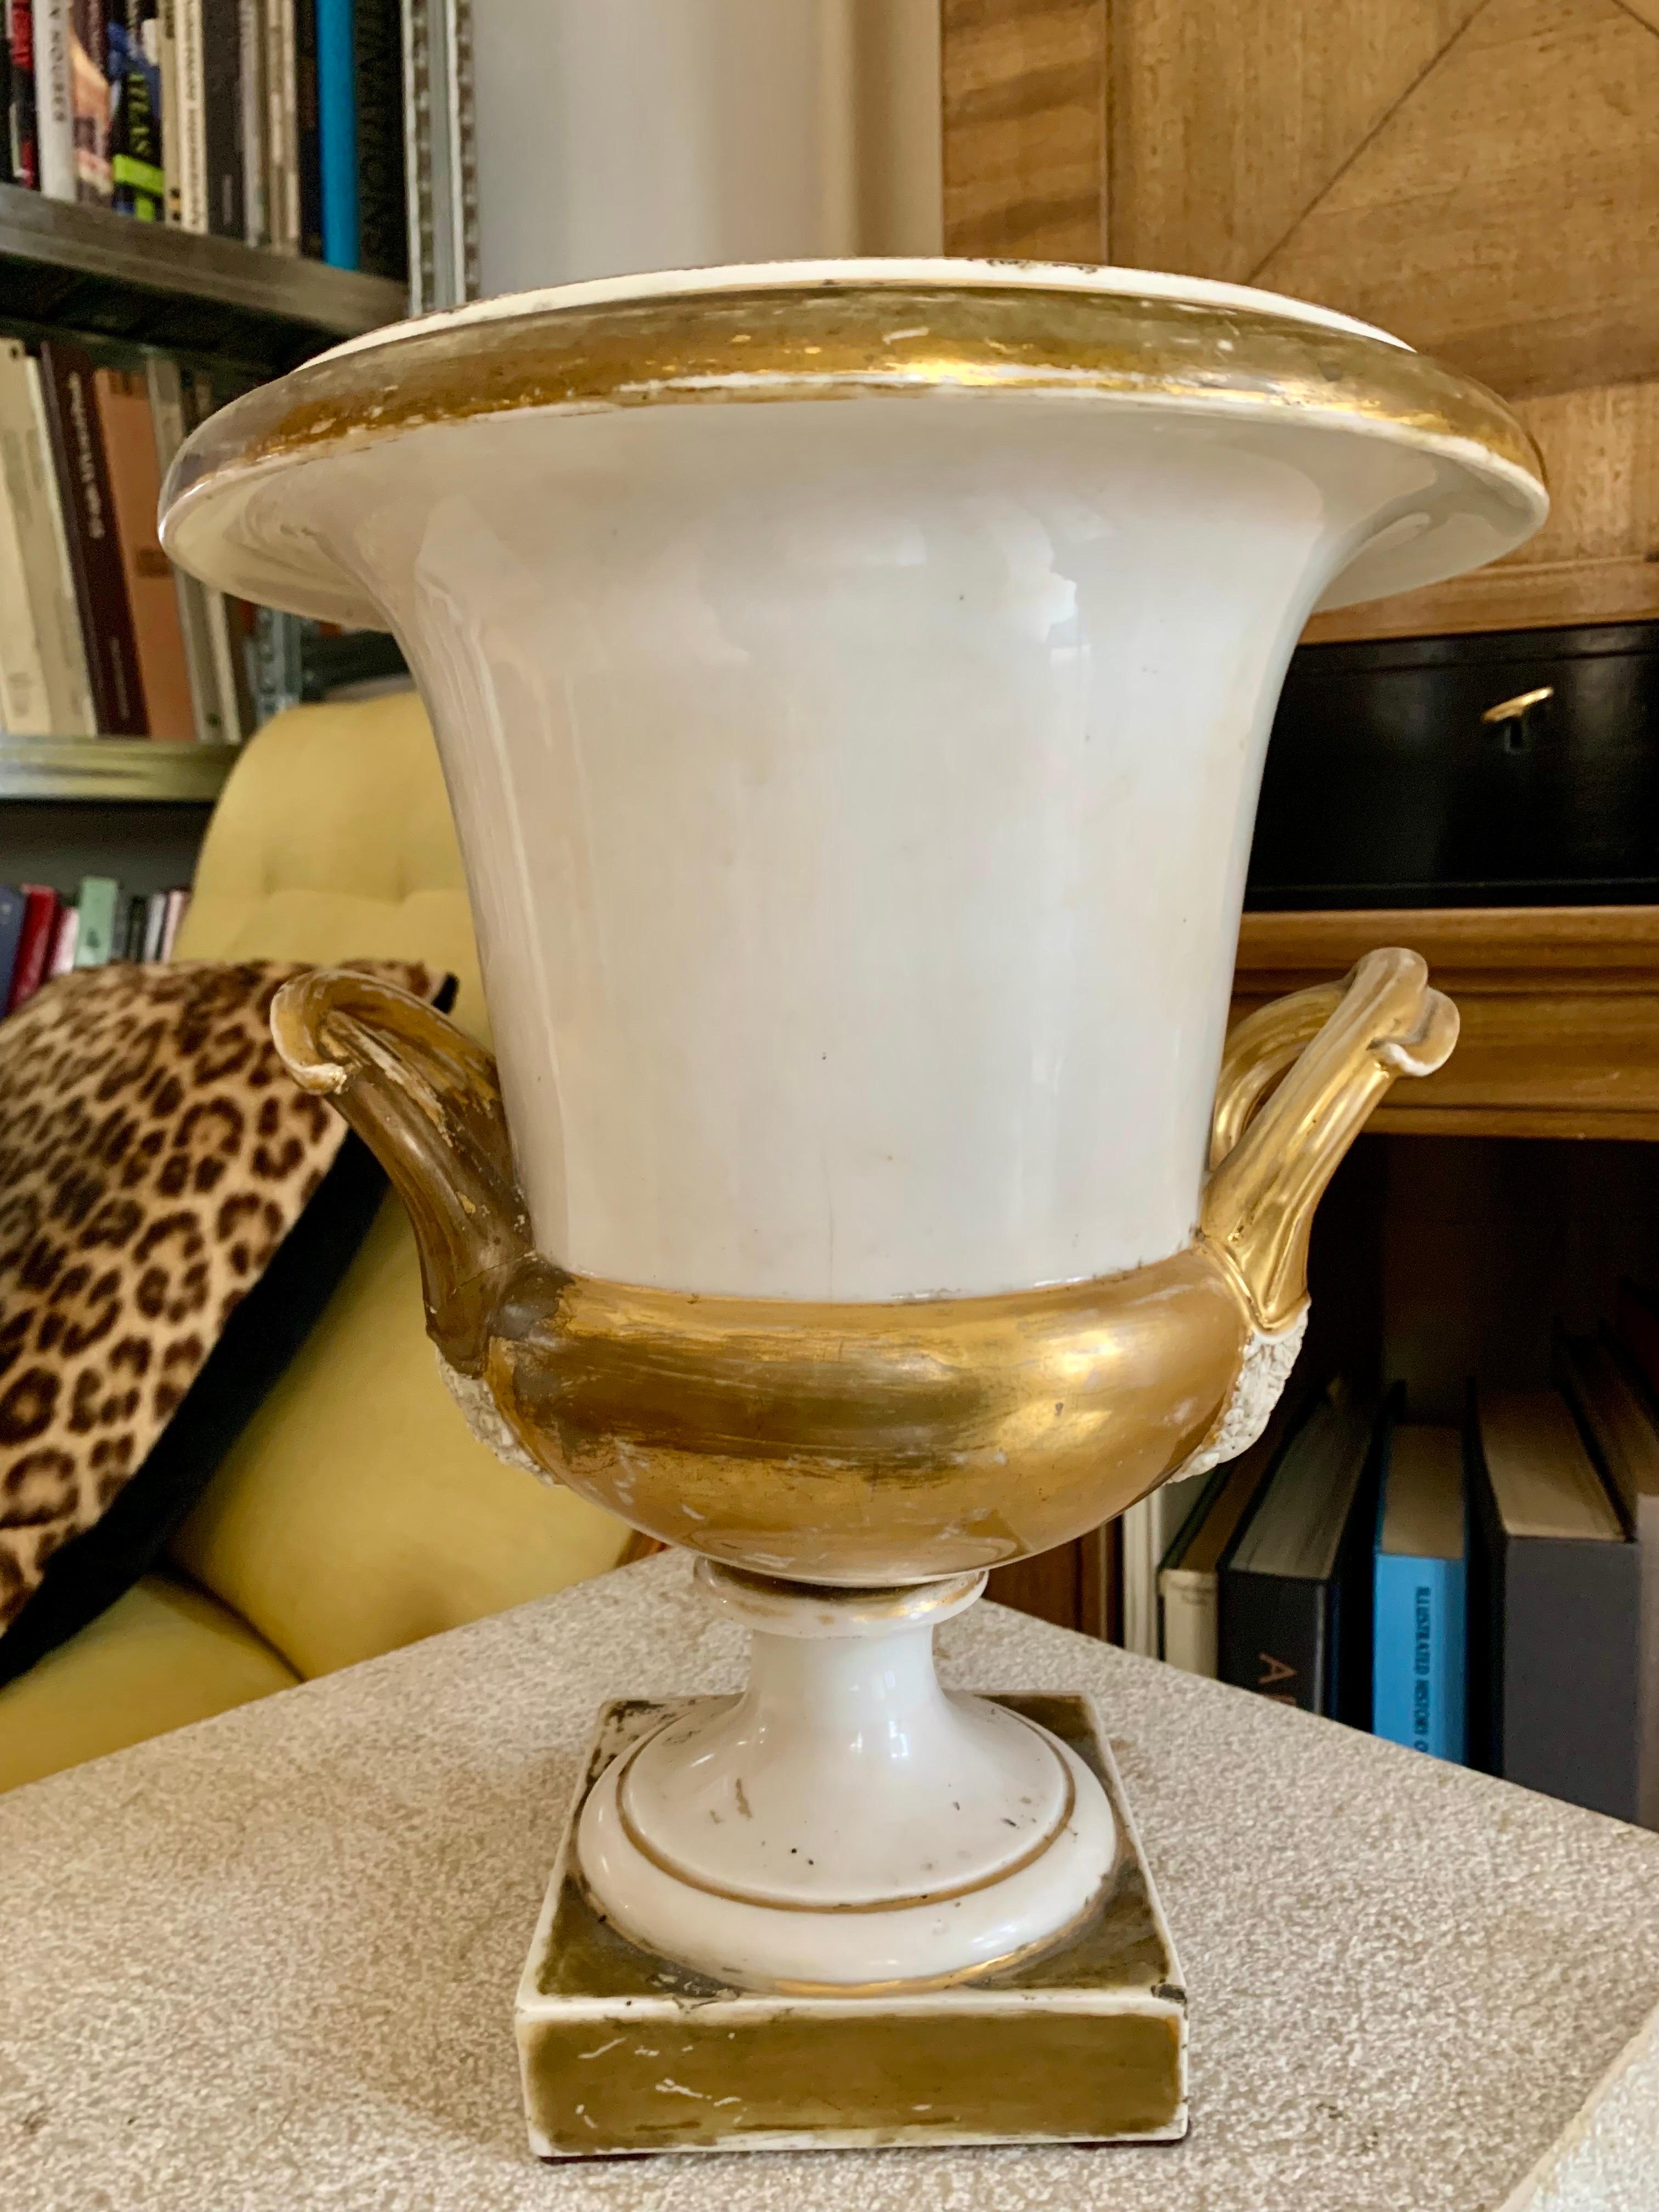 Ein Paar Medici Basen Urnen aus dem 19. Jahrhundert, Napoleon III Periode in alten Pariser Porzellan, seine Dekoration ist sehr einfach, nur Berührungen von Gold und das Porzellan, sind die Griffe mit Pflanzenmotiven verziert.